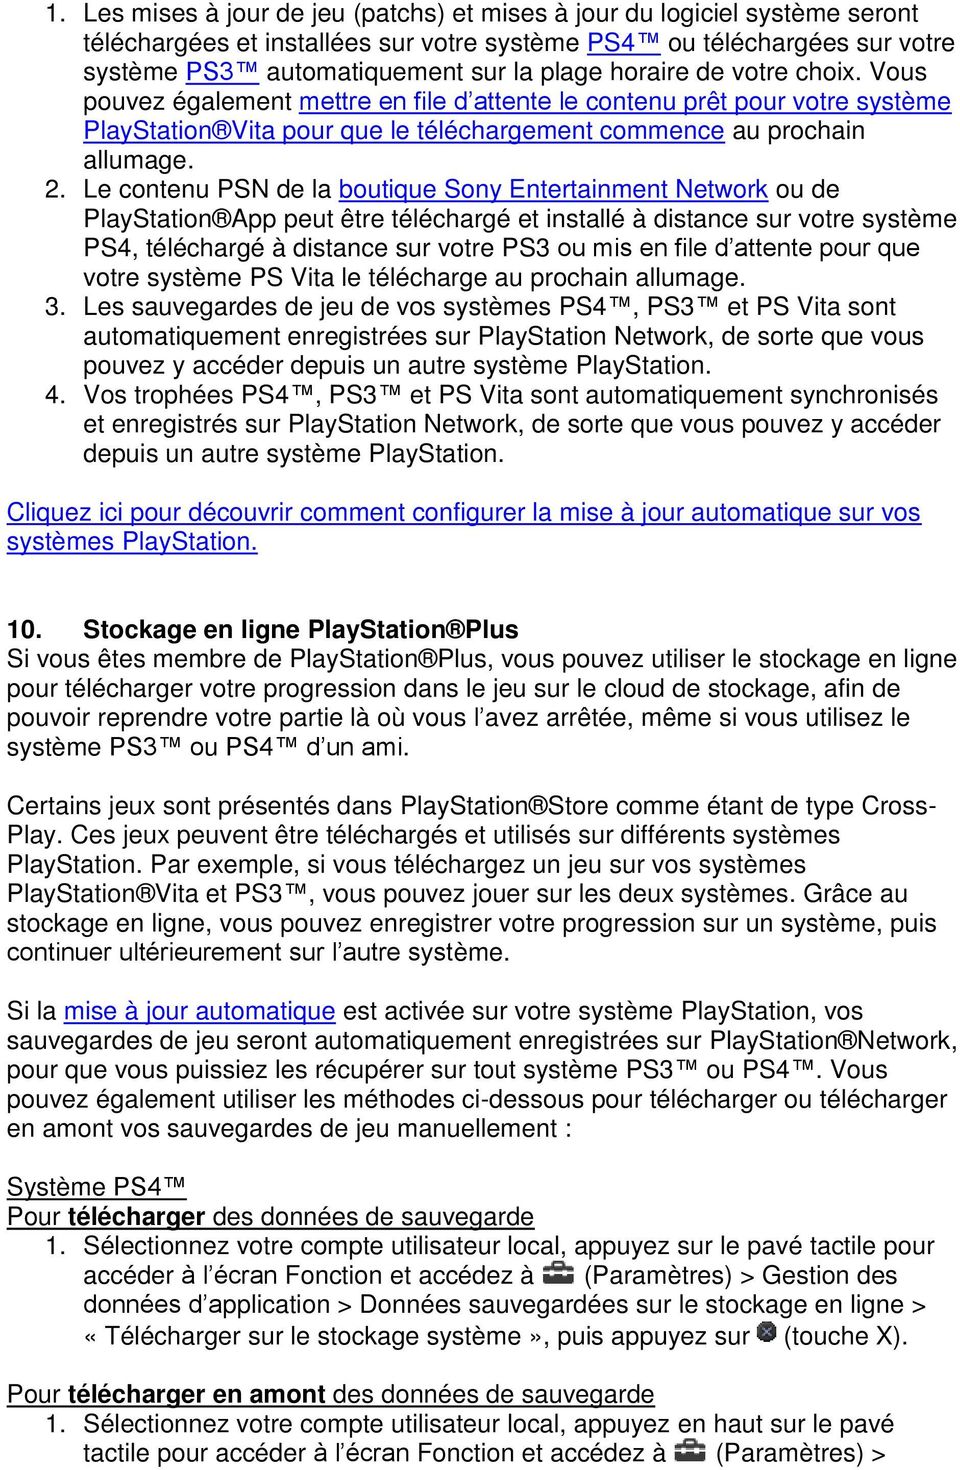 Le contenu PSN de la boutique Sony Entertainment Network ou de PlayStation App peut être téléchargé et installé à distance sur votre système PS4, téléchargé à distance sur votre PS3 ou mis en file d